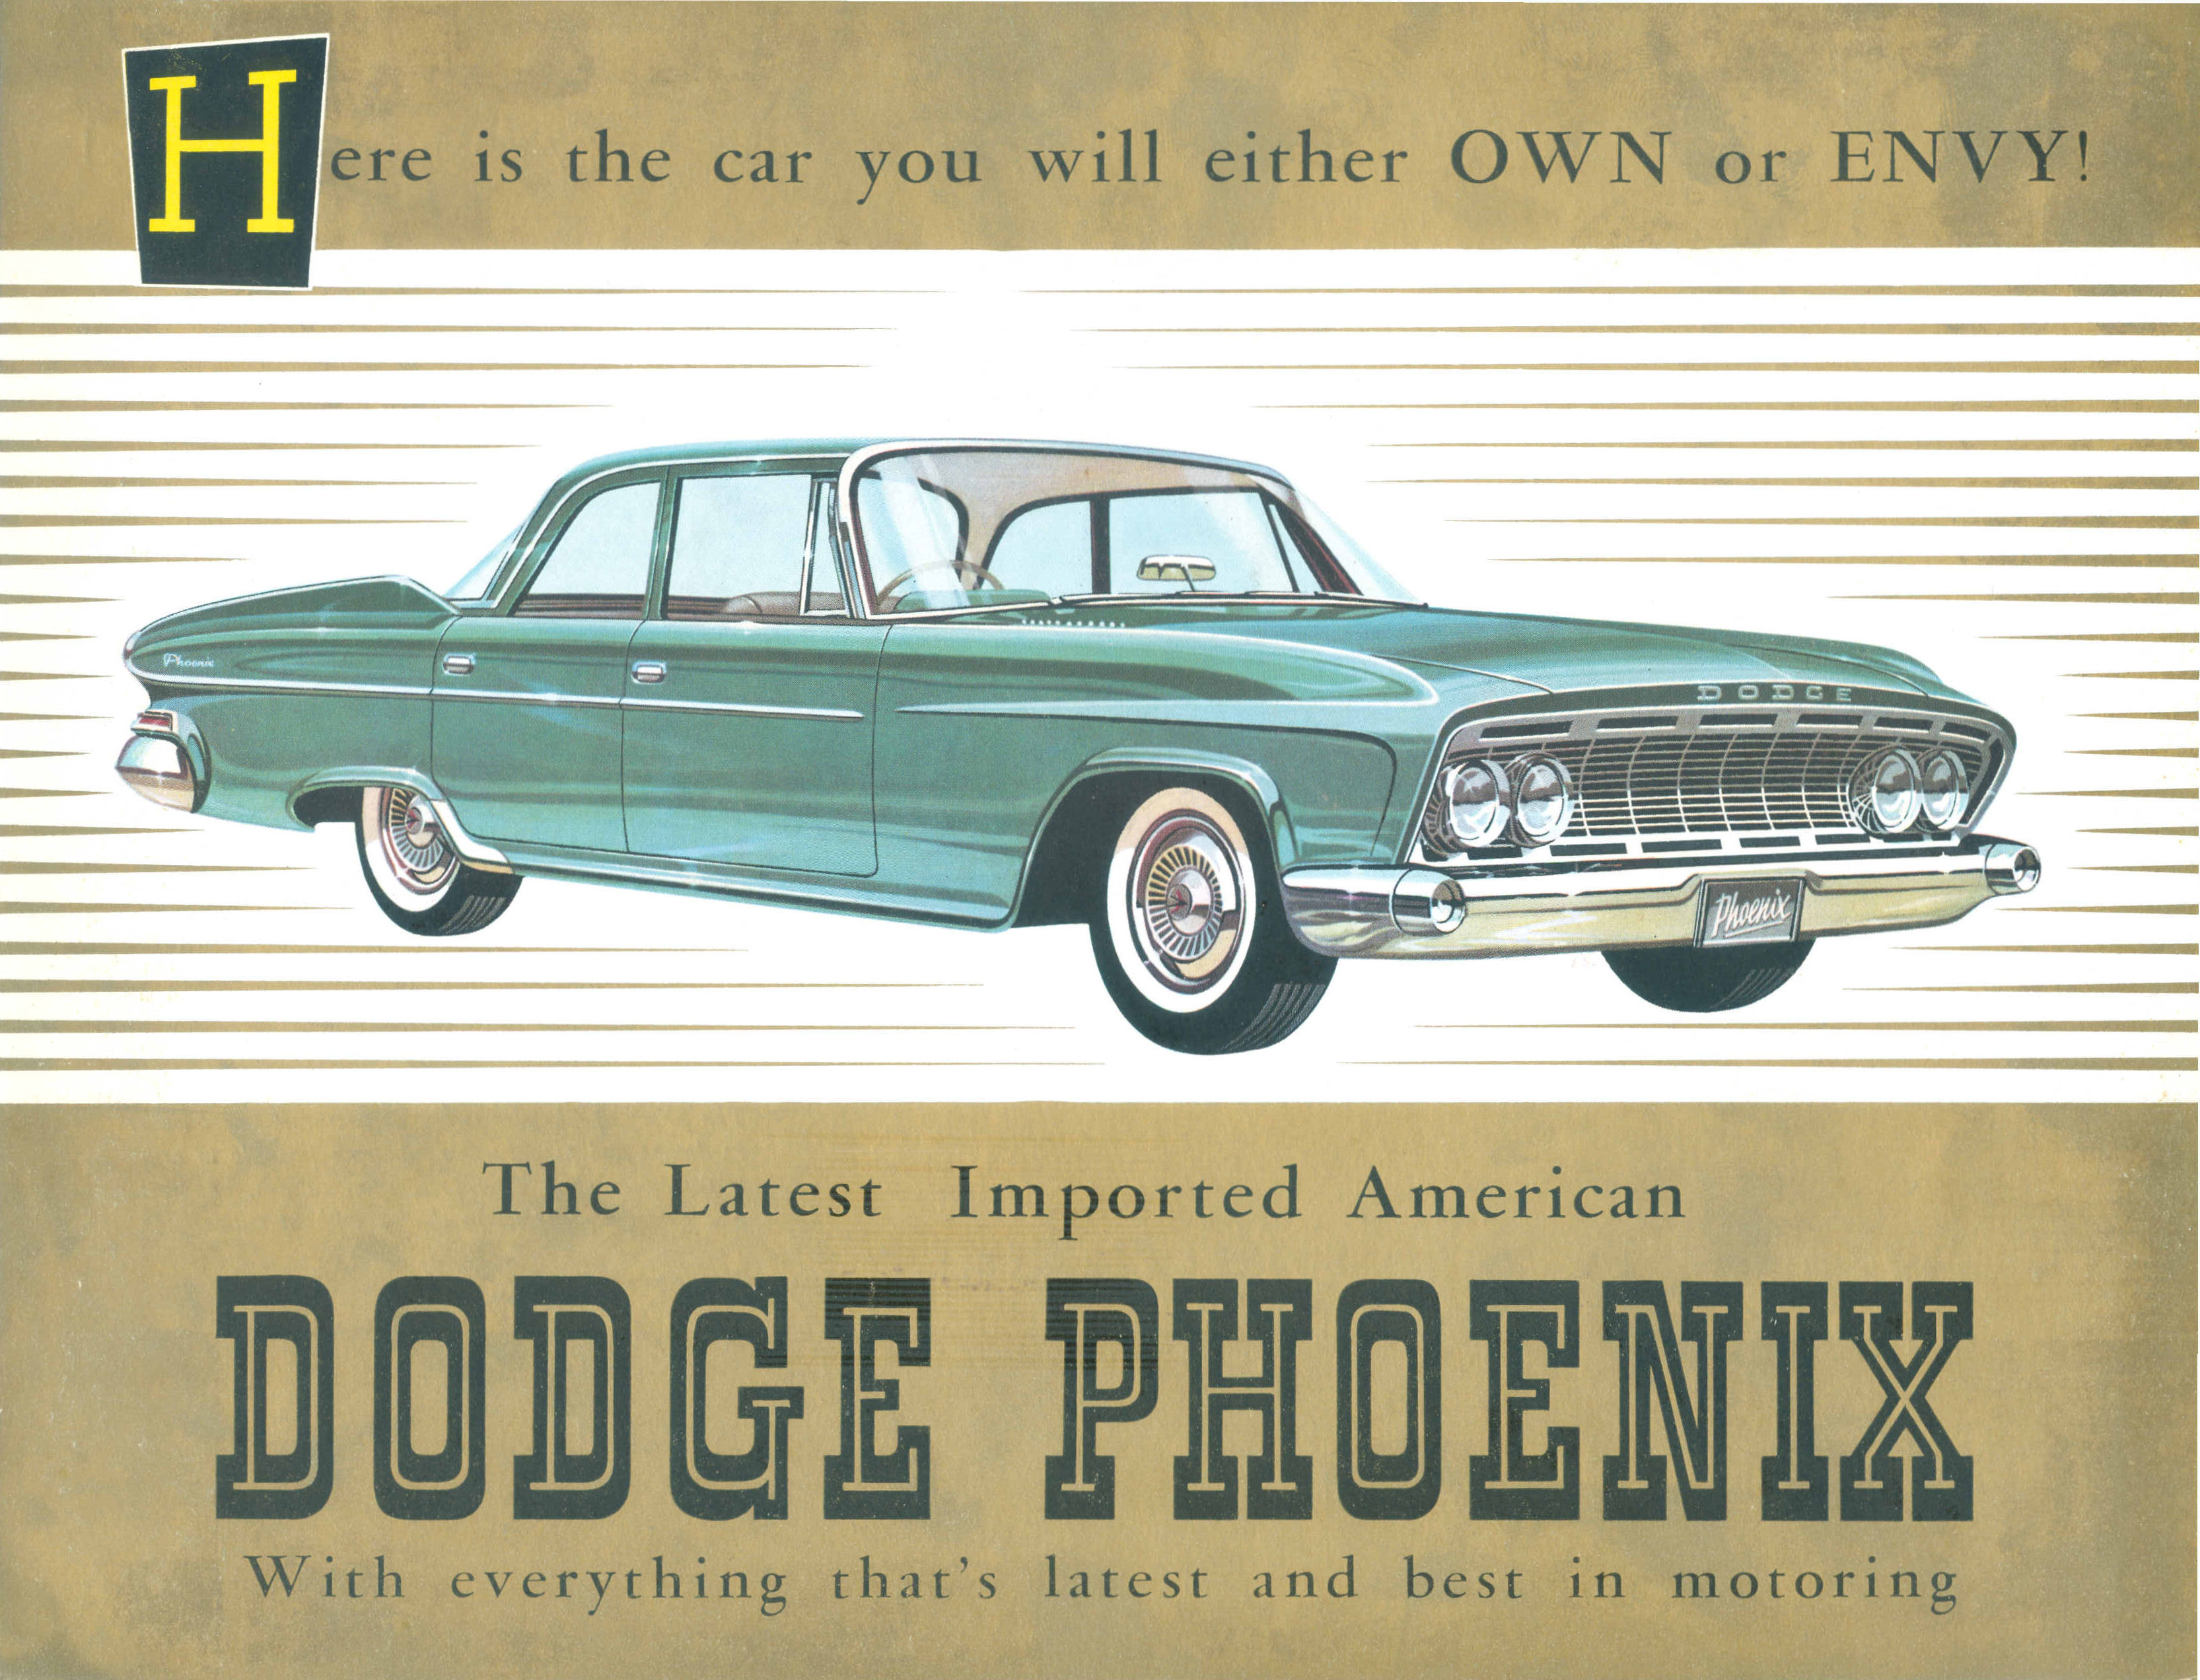 1961 Dodge Folder (Aus)-01